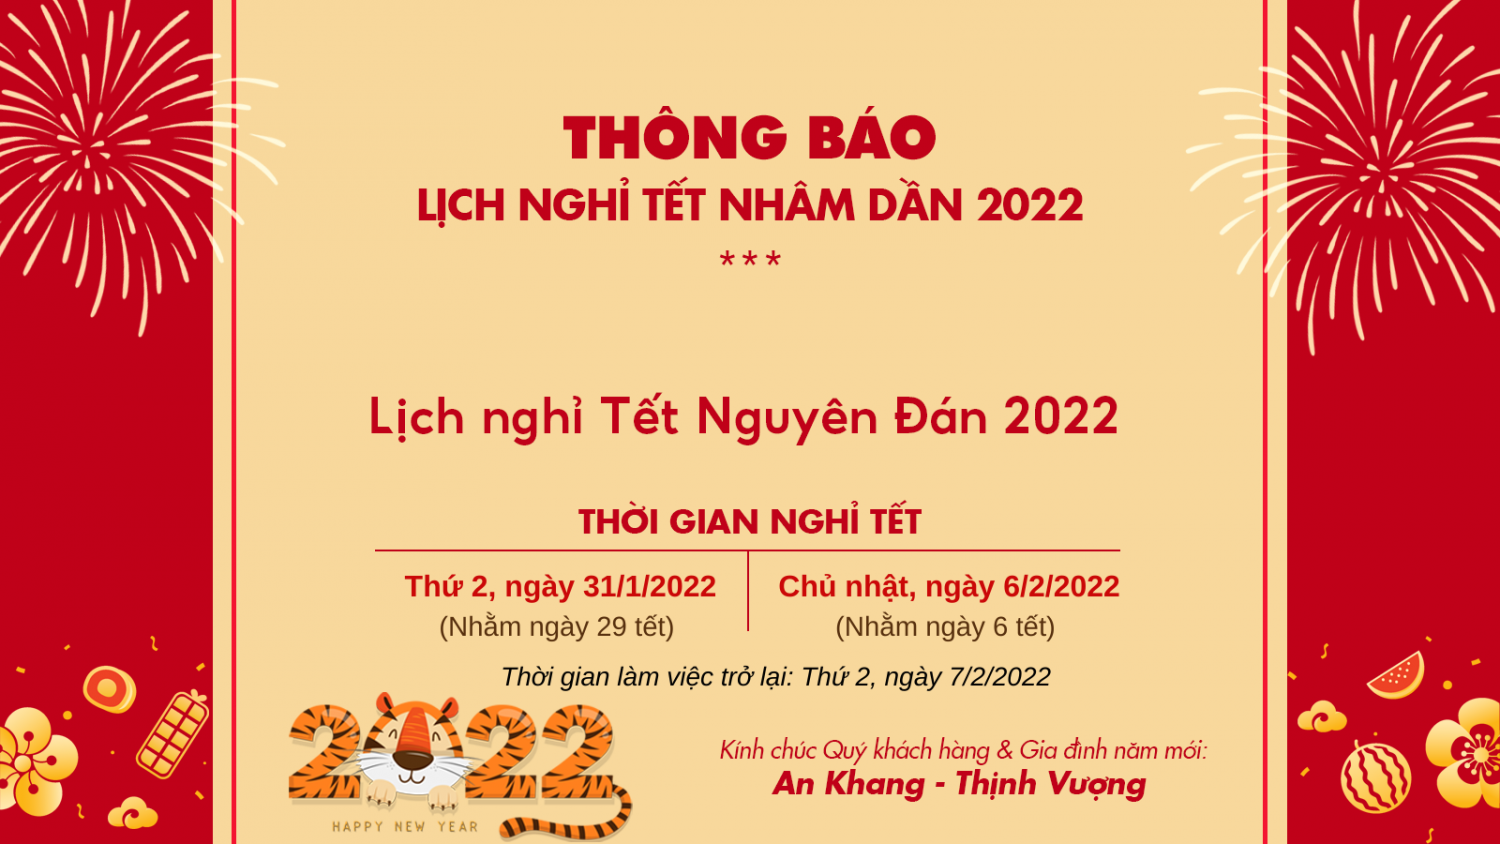 Lịch nghỉ tết Nguyên Đán năm 2022 của Webnhanh